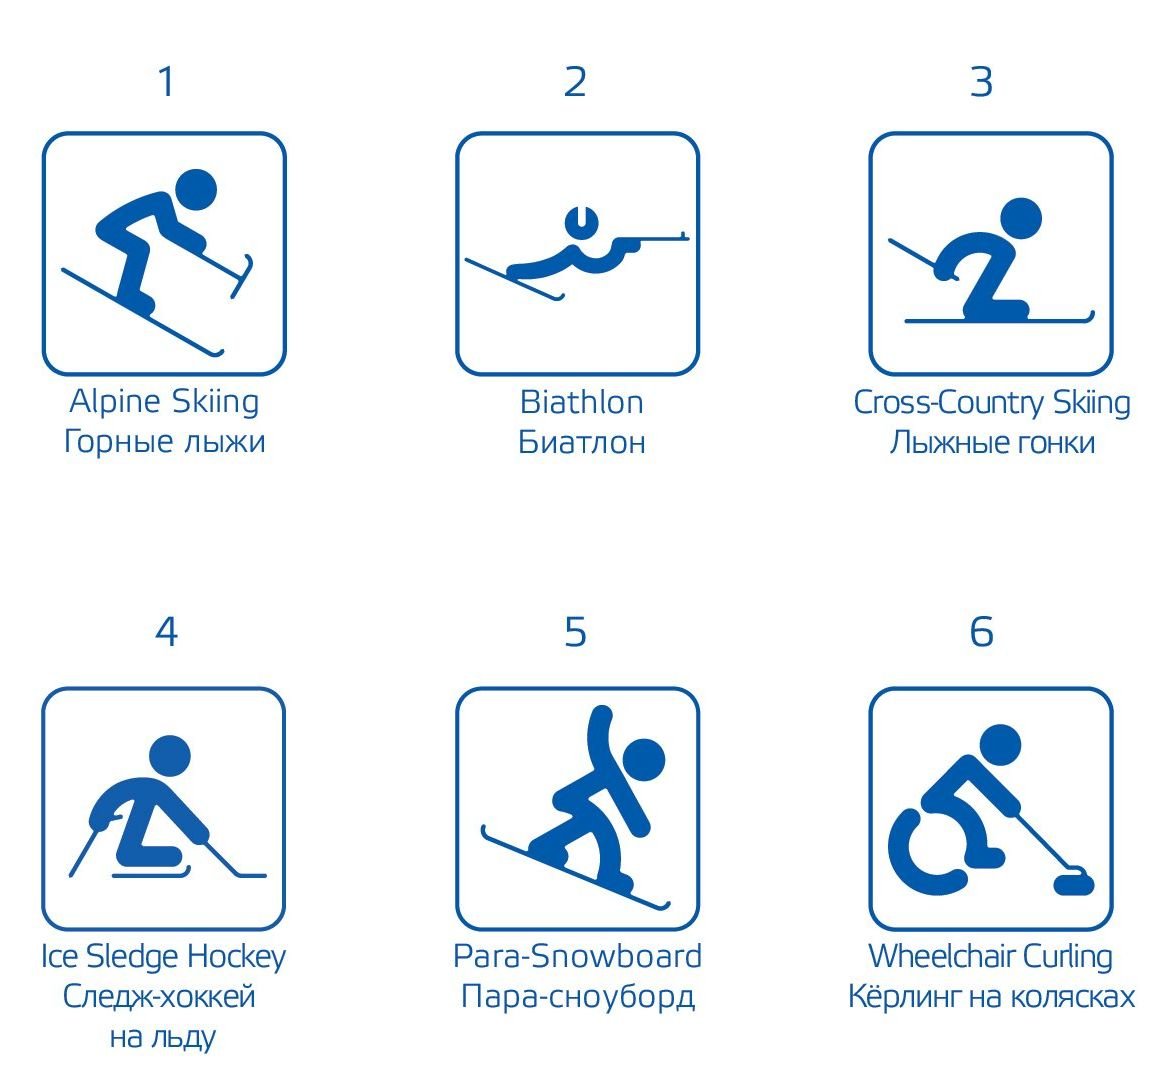 Пиктограммы Паралимпийских видов спорта